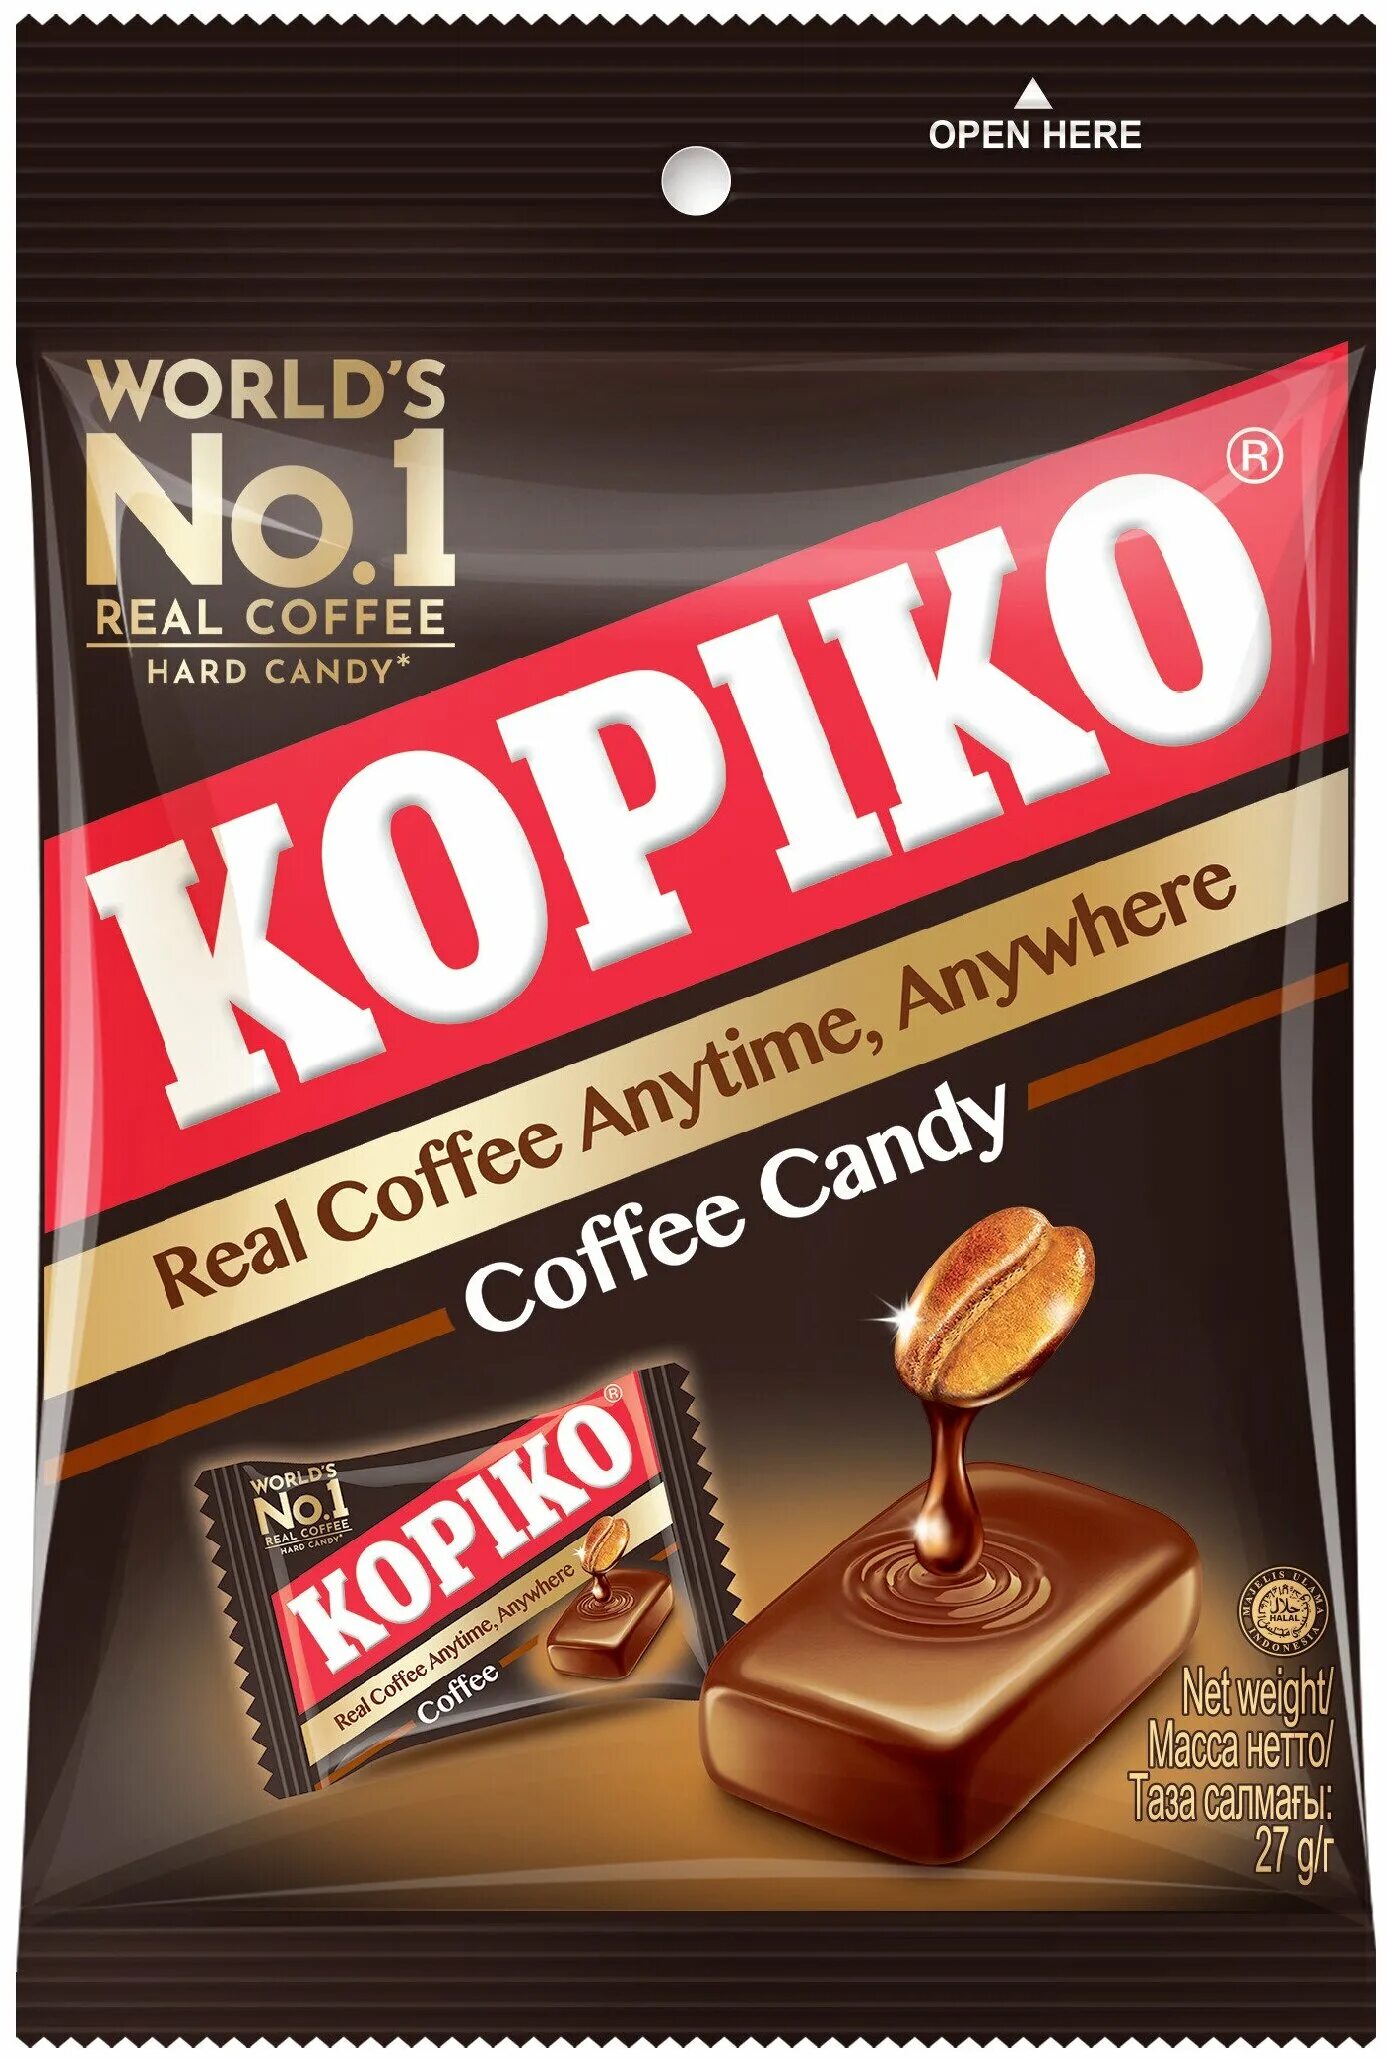 Coffee candy производитель. Kopiko Coffee Candy. Кофейные леденцы Kopiko. Конфеты со вкусом кофе Kopiko. Леденцы Kopiko каппучино Candy 27гр.